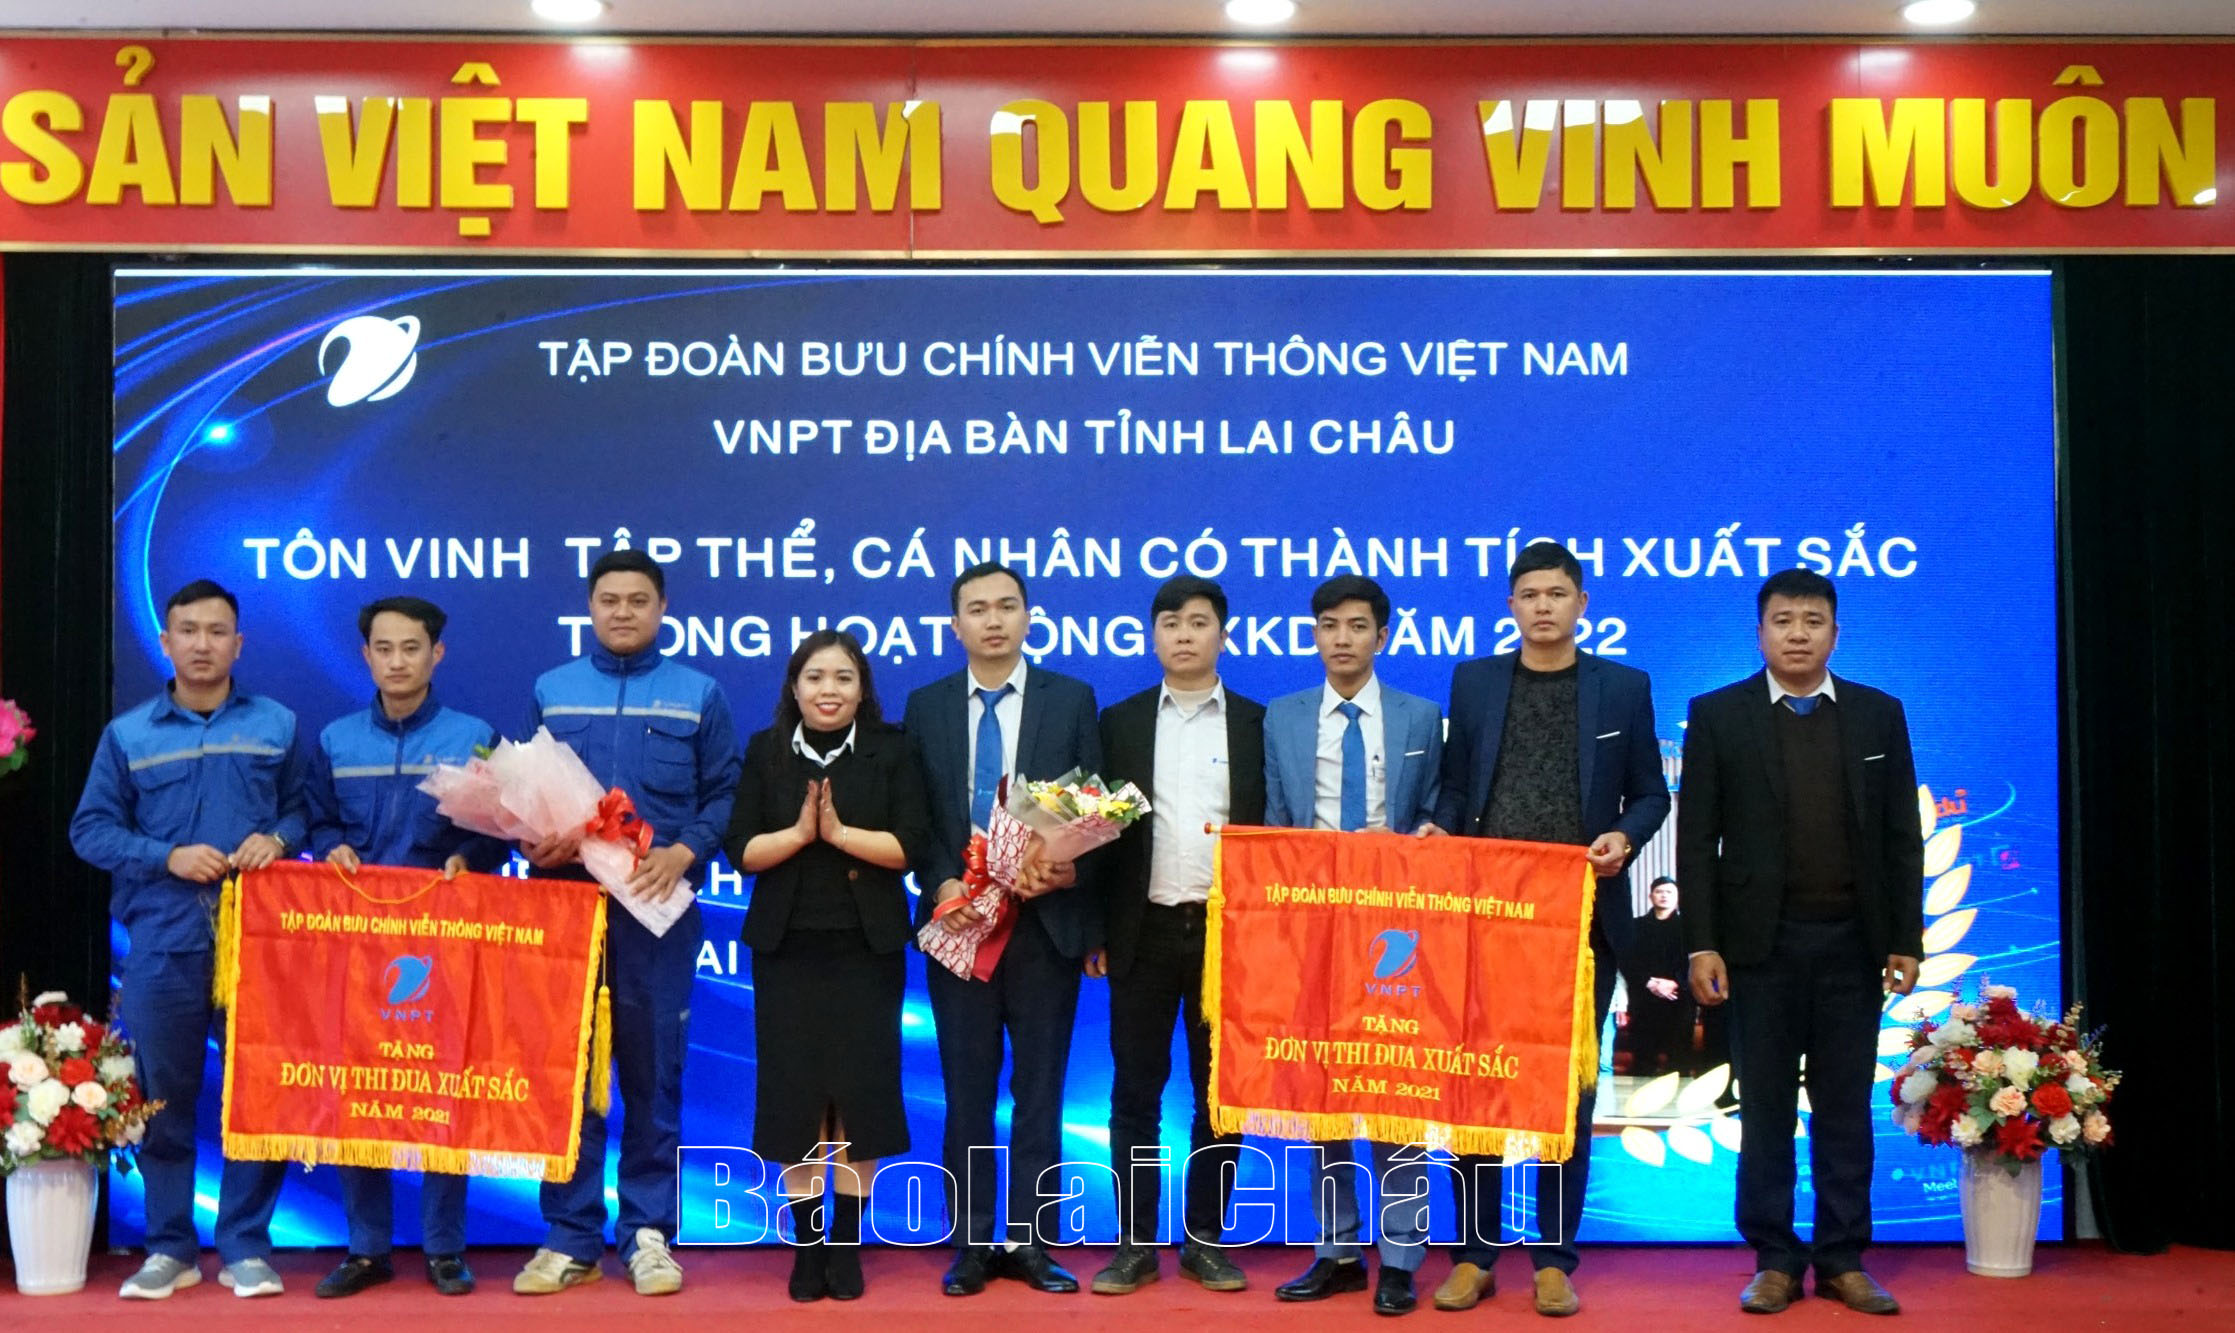 Đồng chí Pờ Thị Hiền - Trưởng đại diện, Giám đốc Viễn thông Lai Châu trao Cờ thi đua của Tập đoàn Bưu chính viễn thông Việt Nam cho các đơn vị đạt danh hiệu thi đua xuất sắc năm 2021.